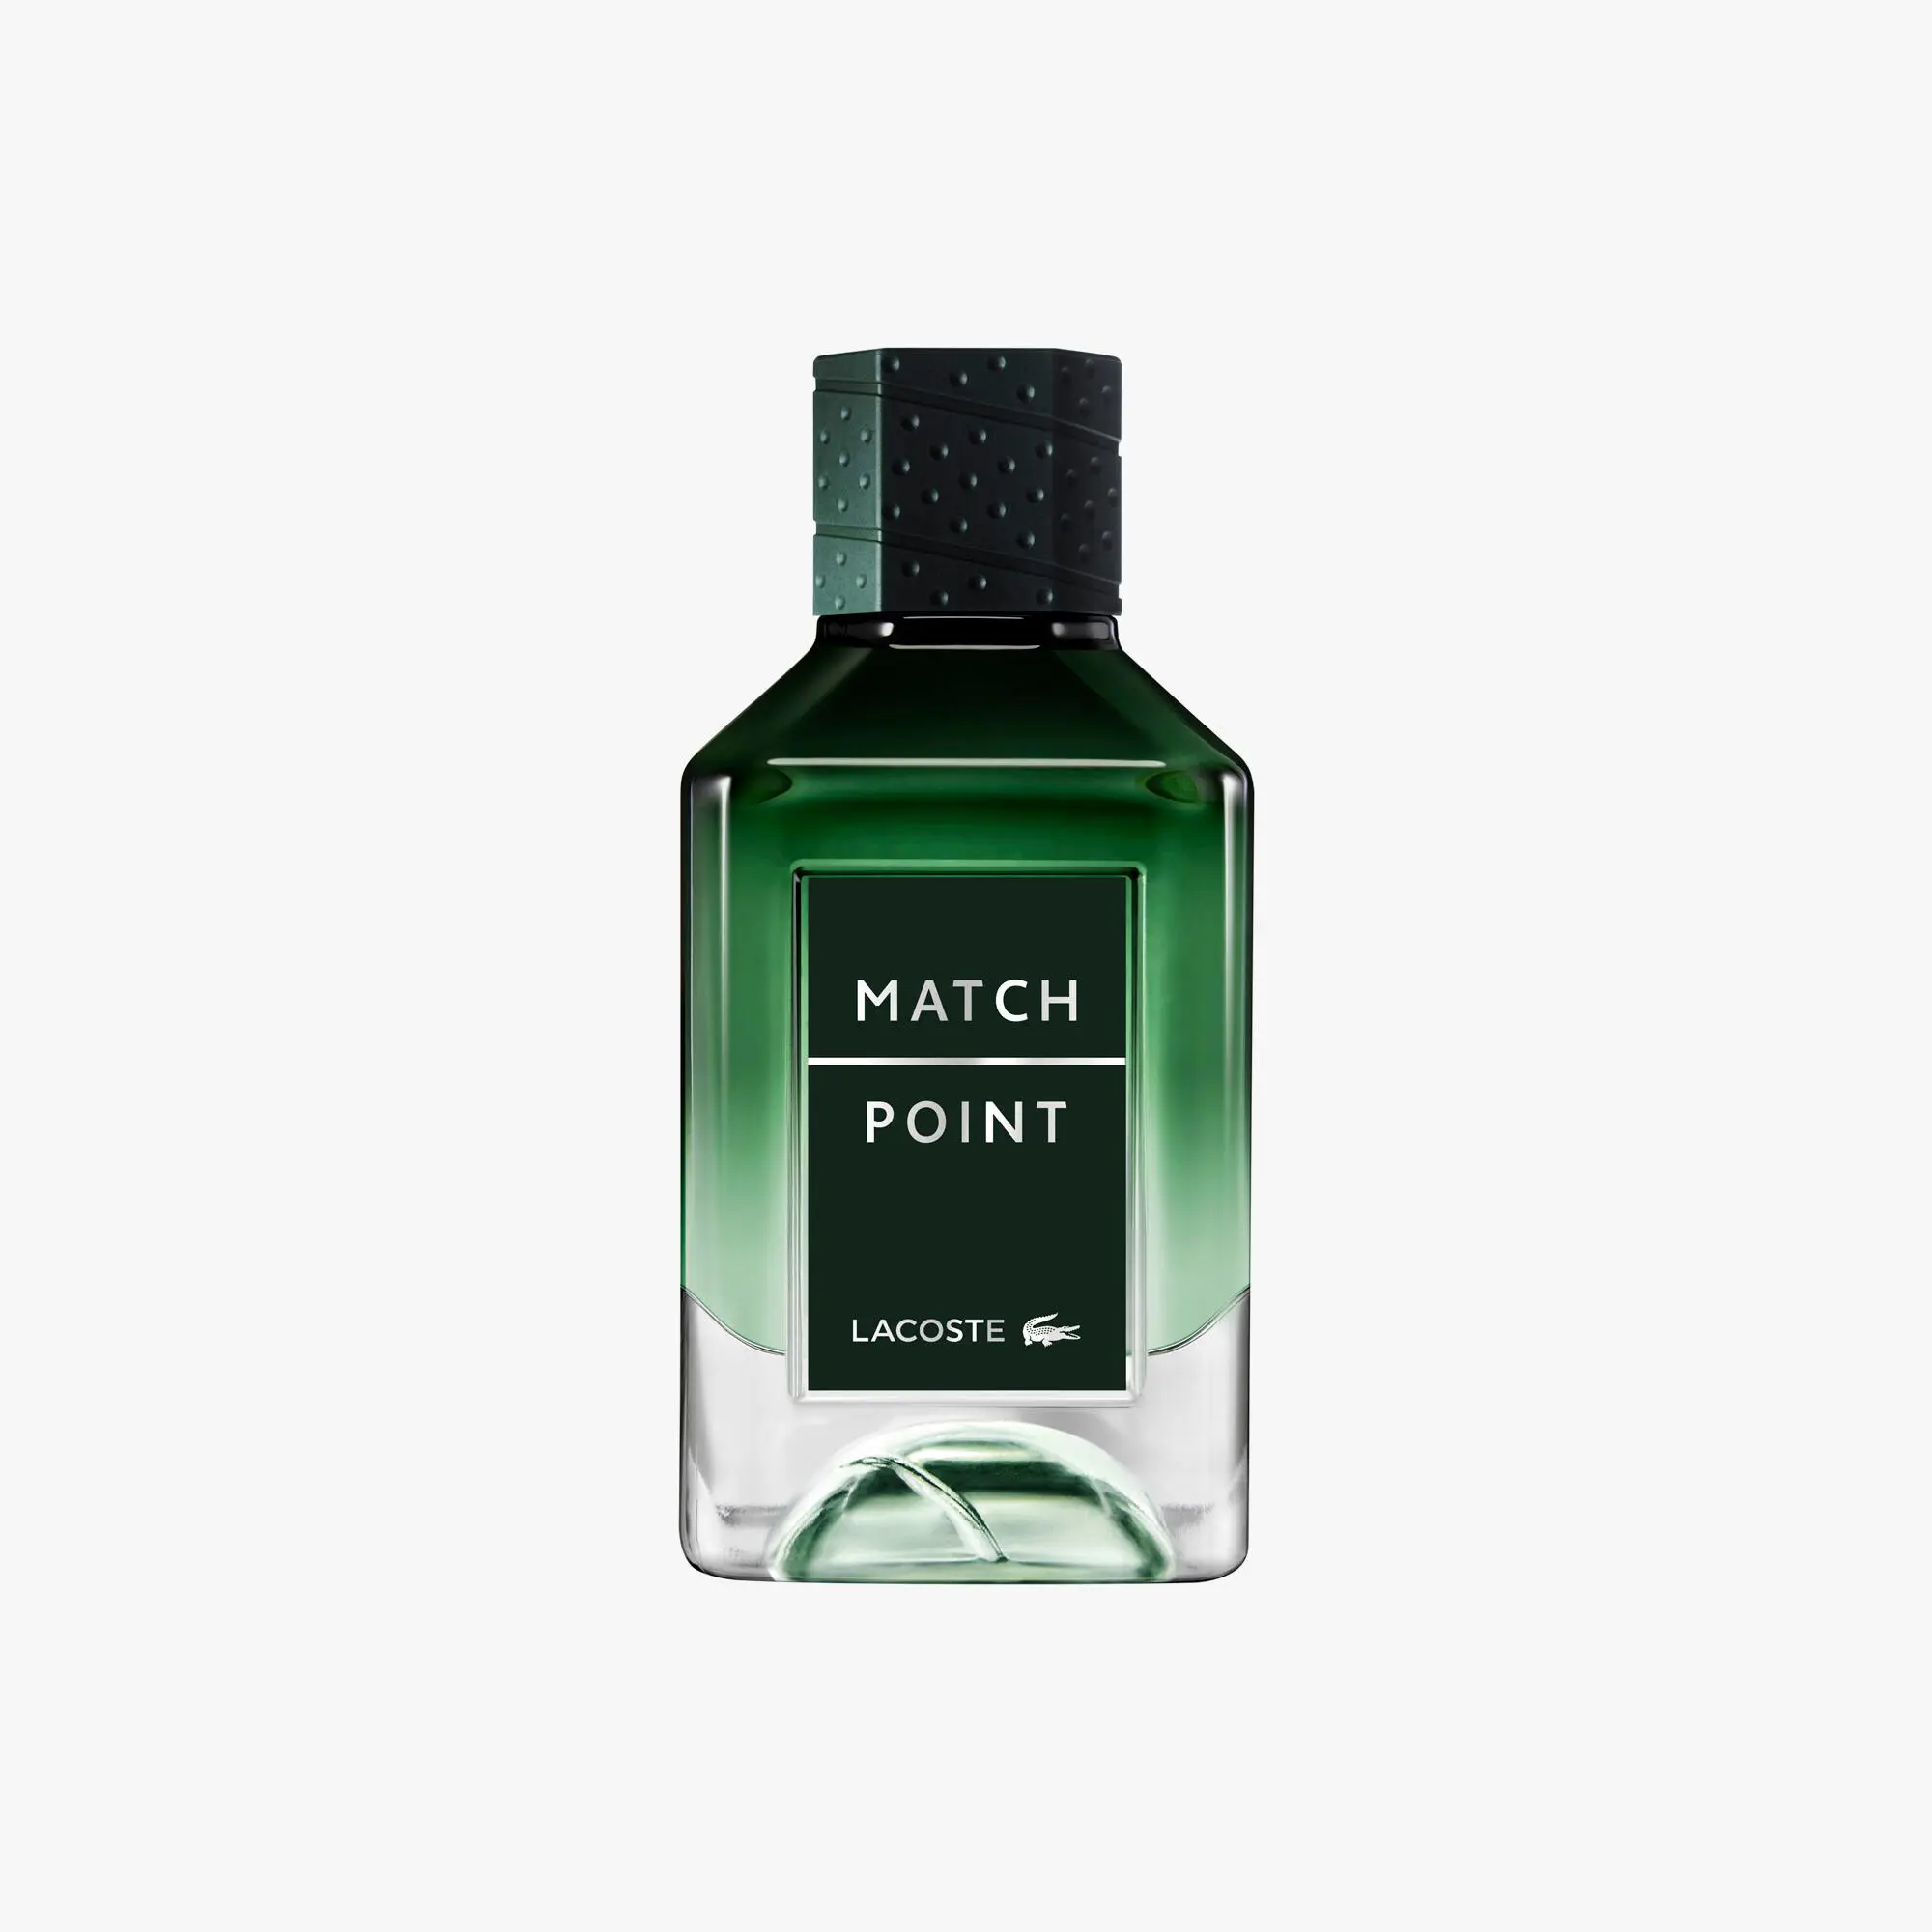 Lacoste Match Point Eau de Parfum 100ml. 1